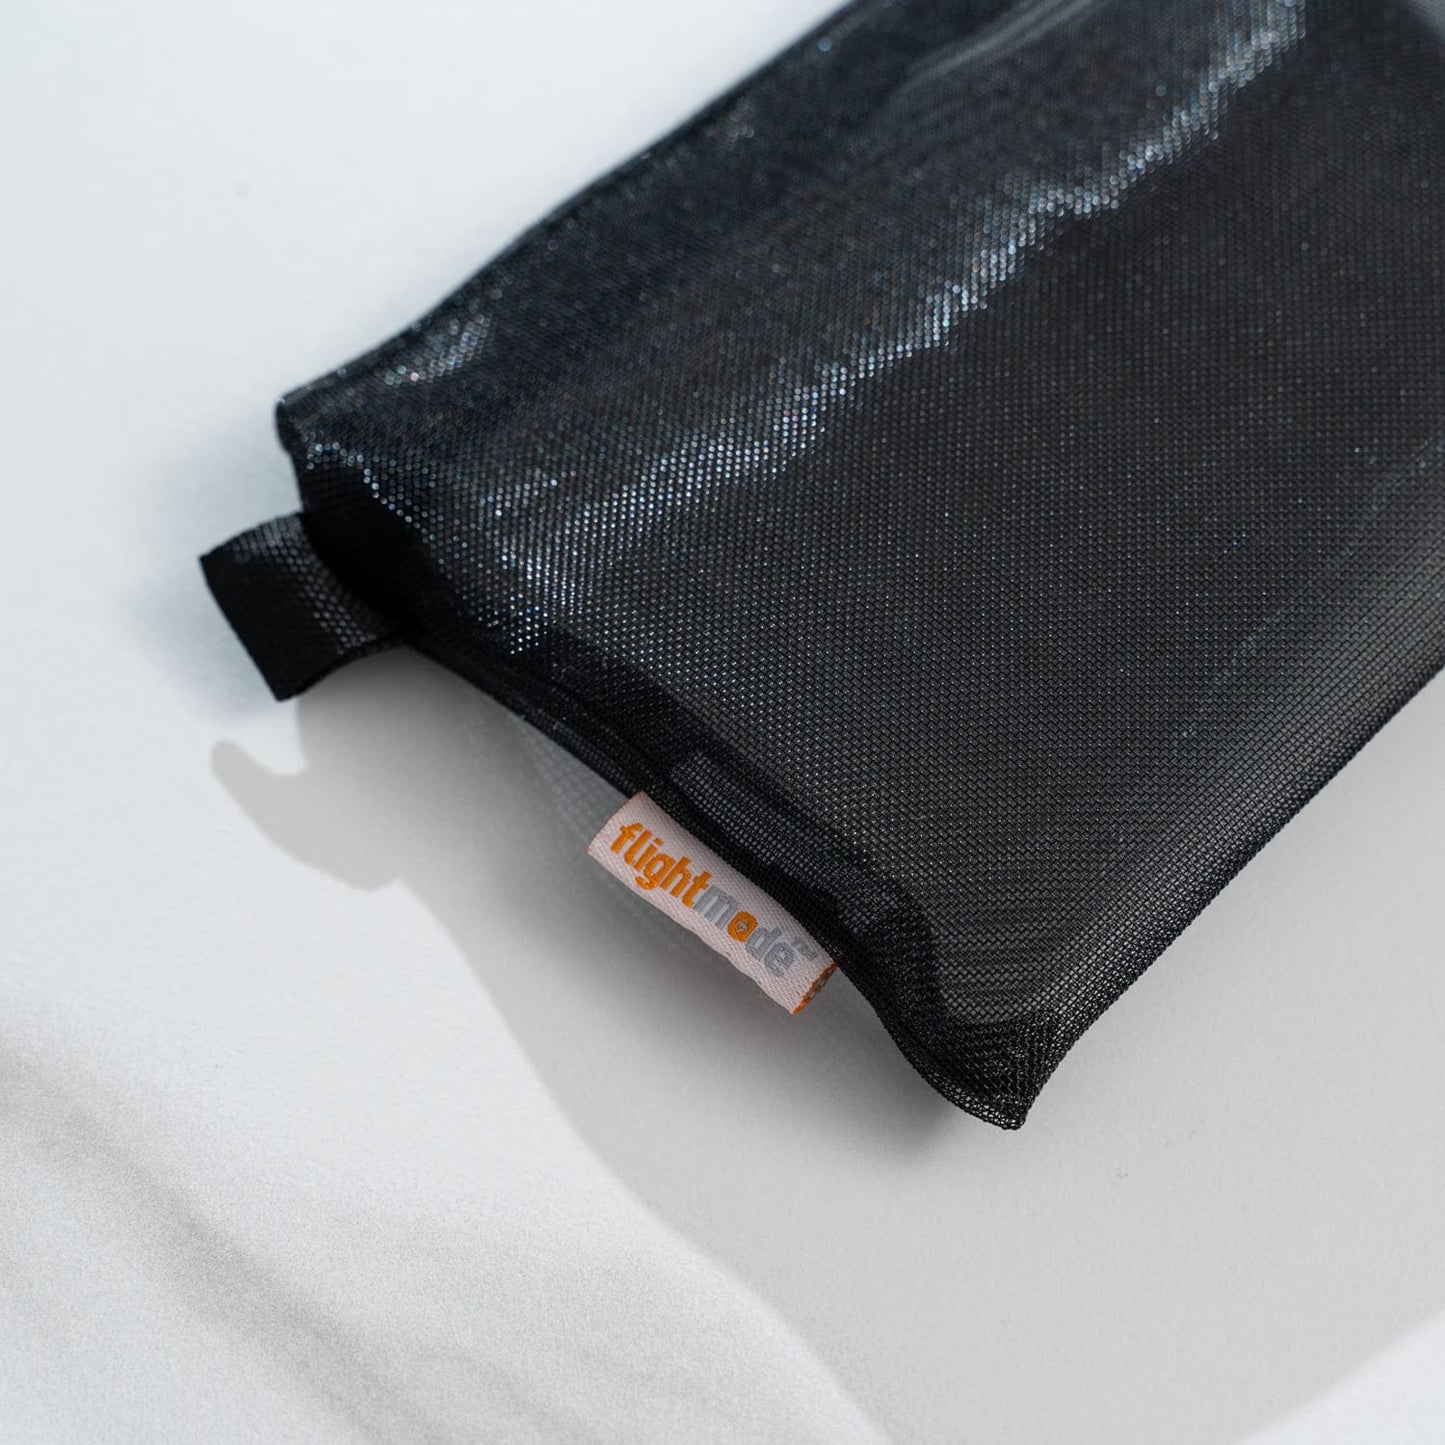 3 Pack Zipper Travel Cosmetic Mesh Bag Set